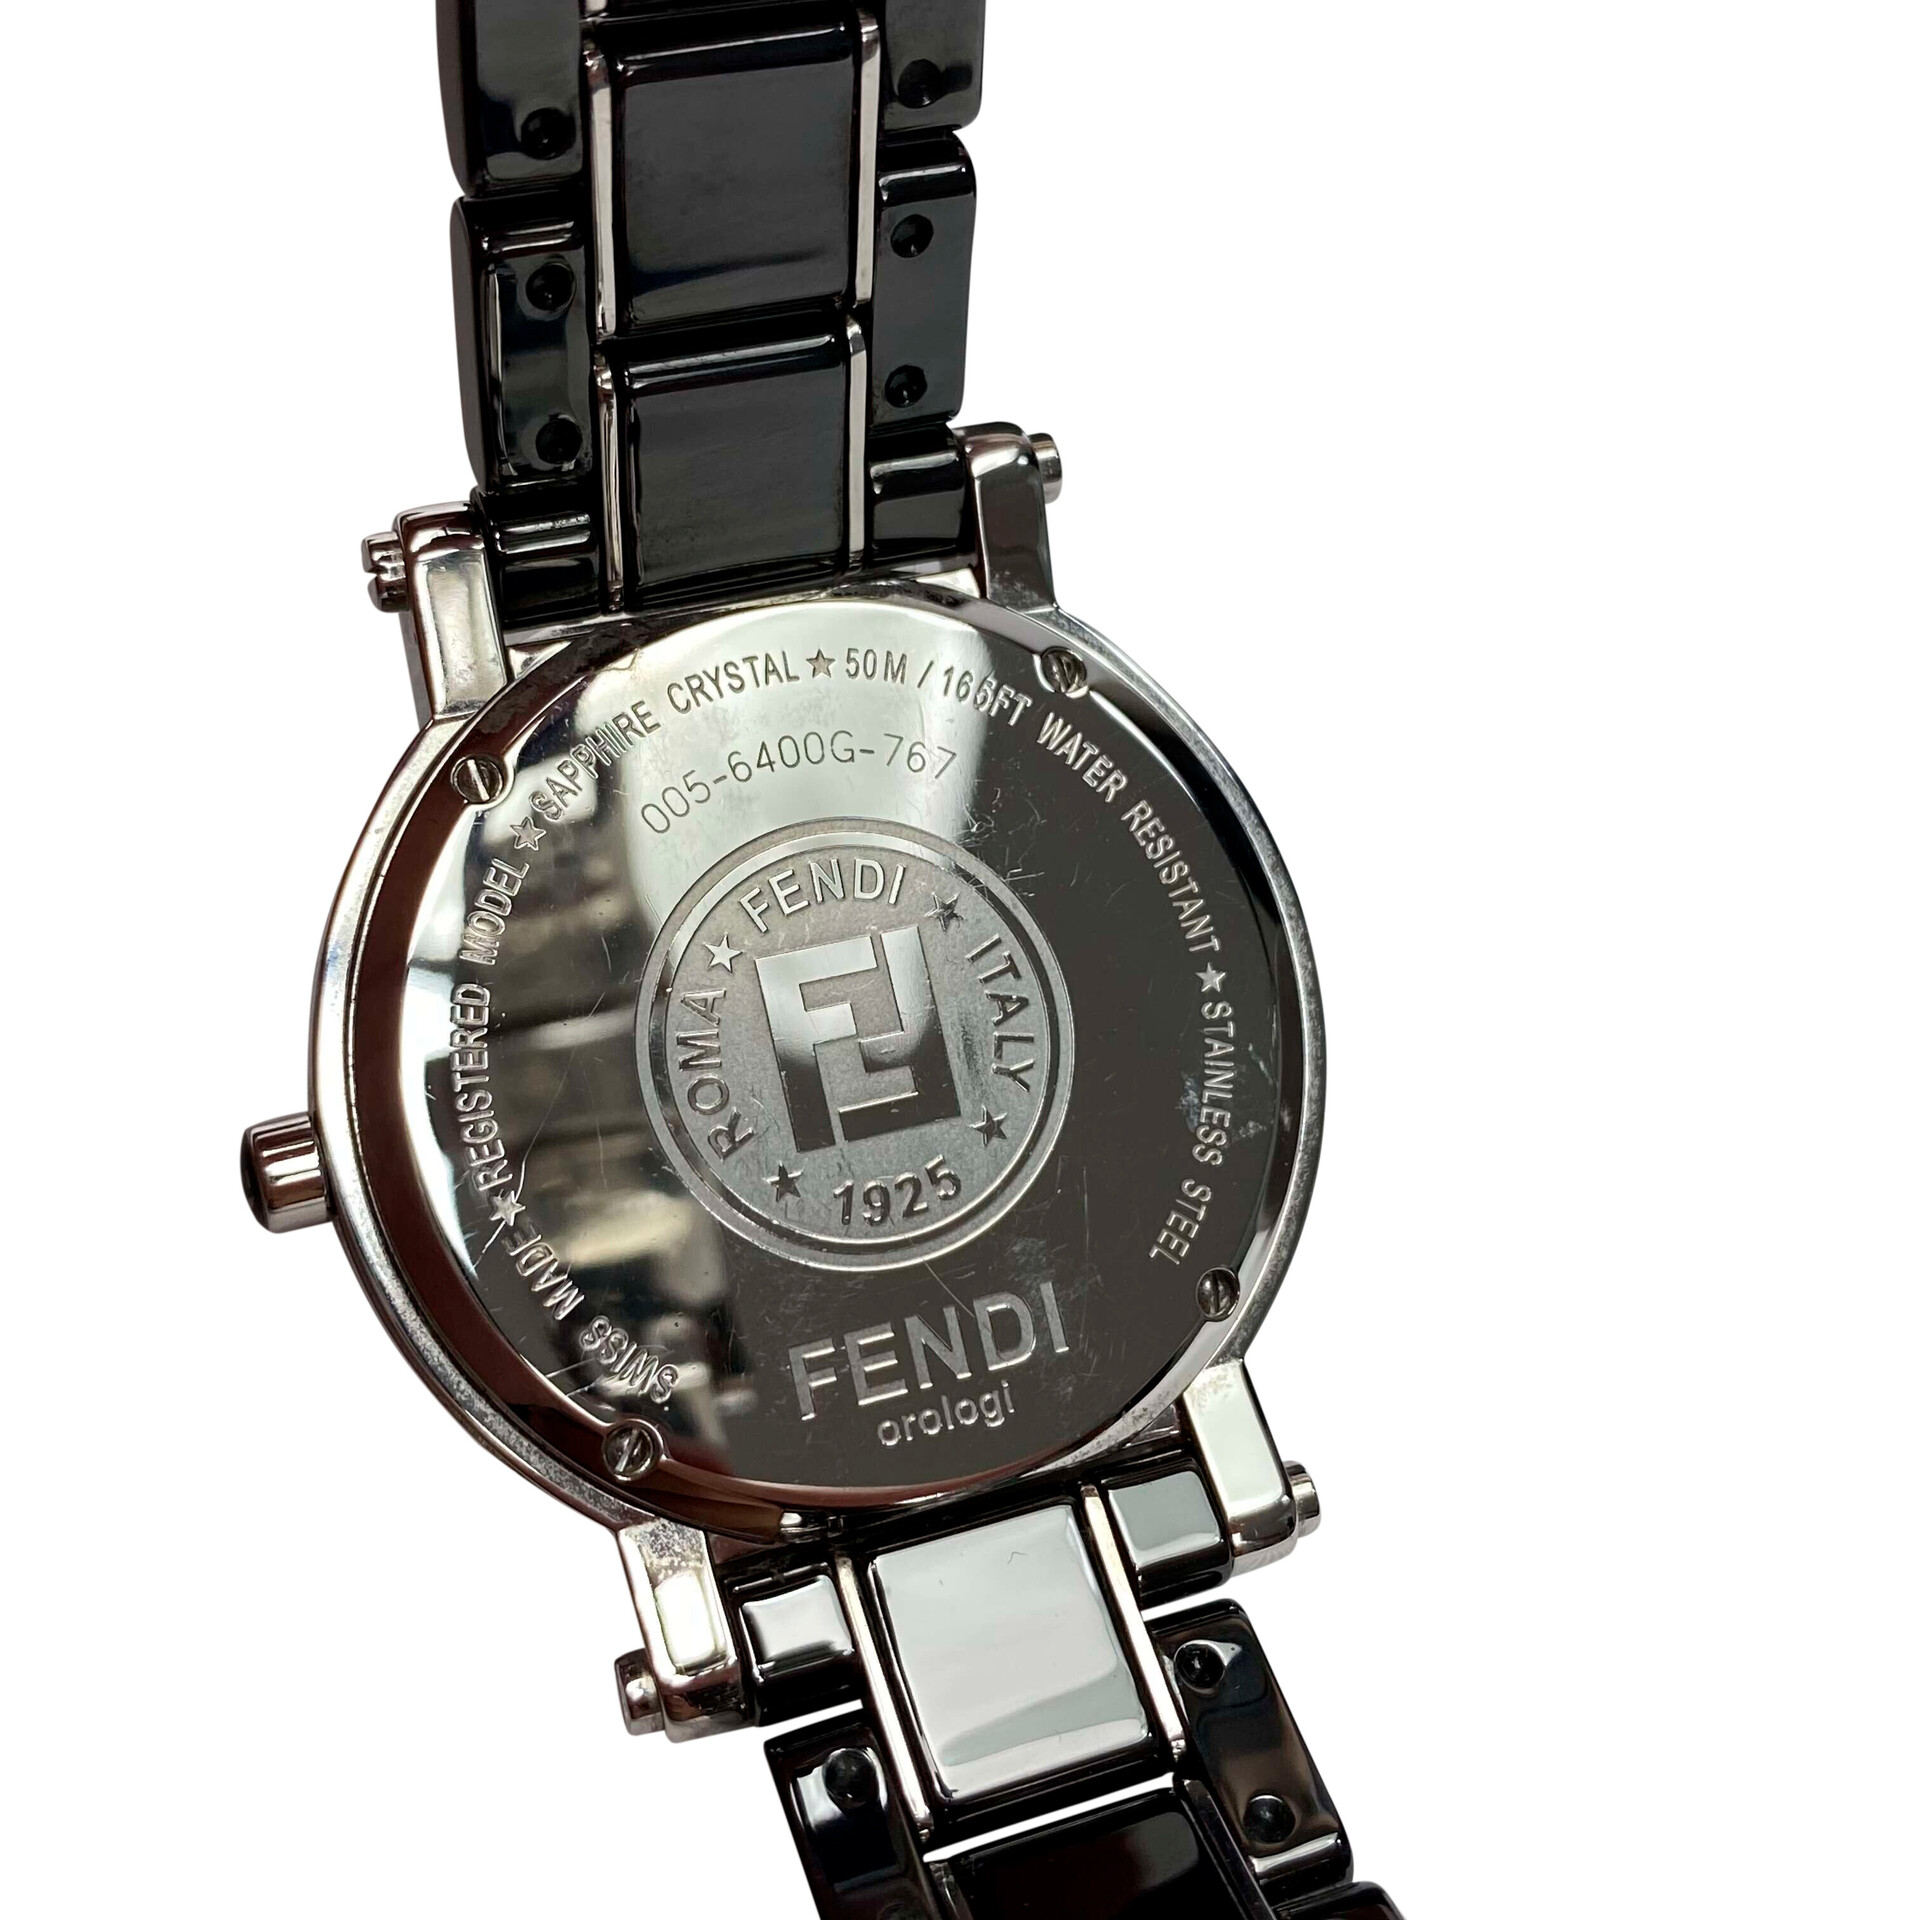 Relógio Fendi Orologi 3050 L - Paris Brechó